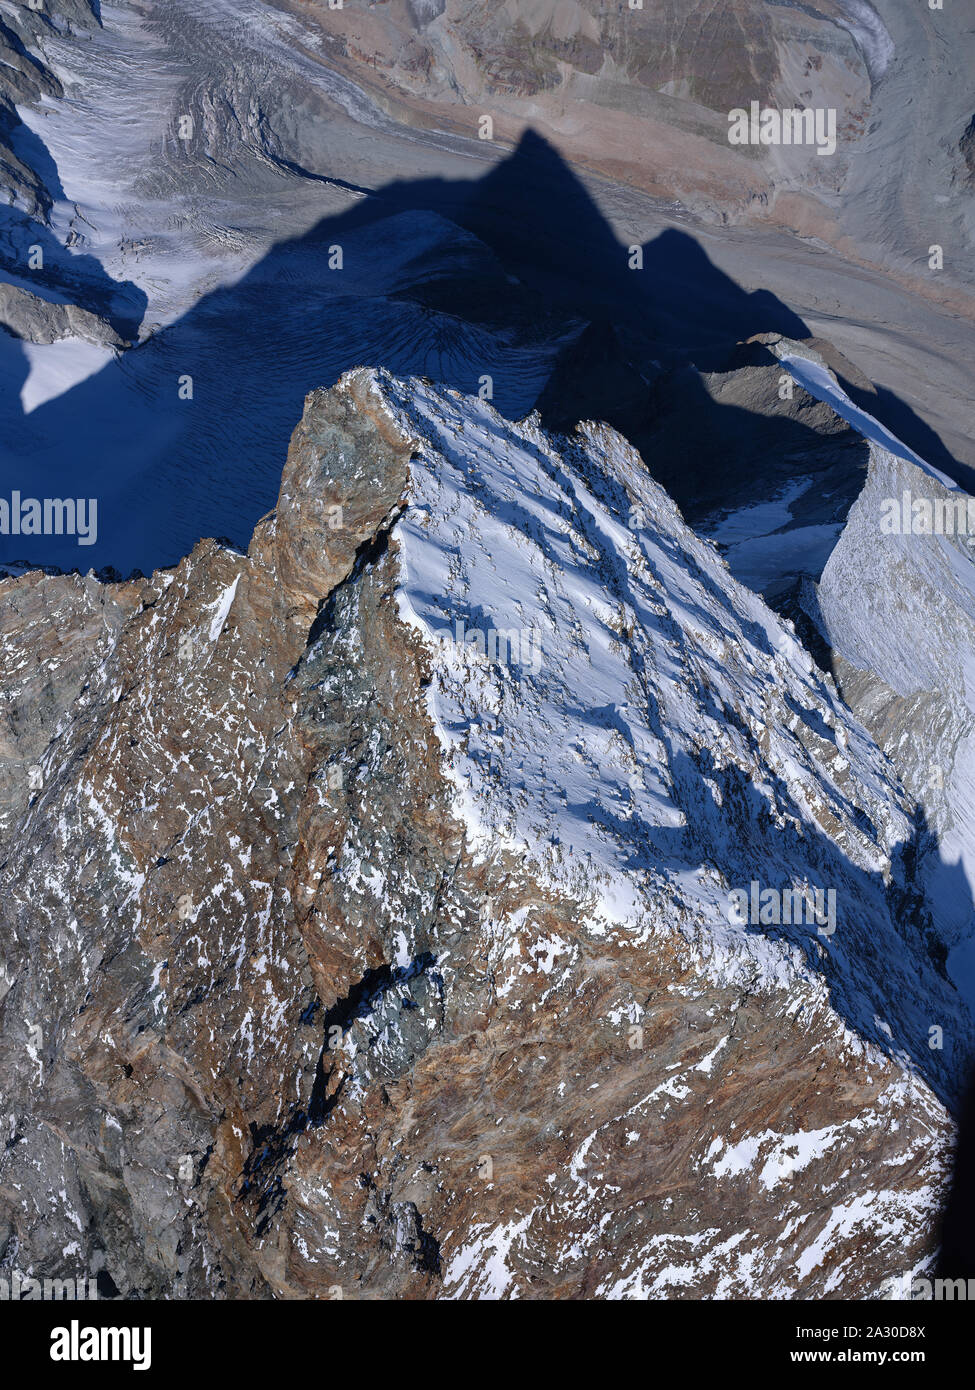 VUE AÉRIENNE. Sommet de Matterhorn / Cervino de 4478 mètres de haut. Longue crête séparant l'Italie de Breuil-Cervinia (côté rocailleux) de la Suisse à Zermatt. Banque D'Images